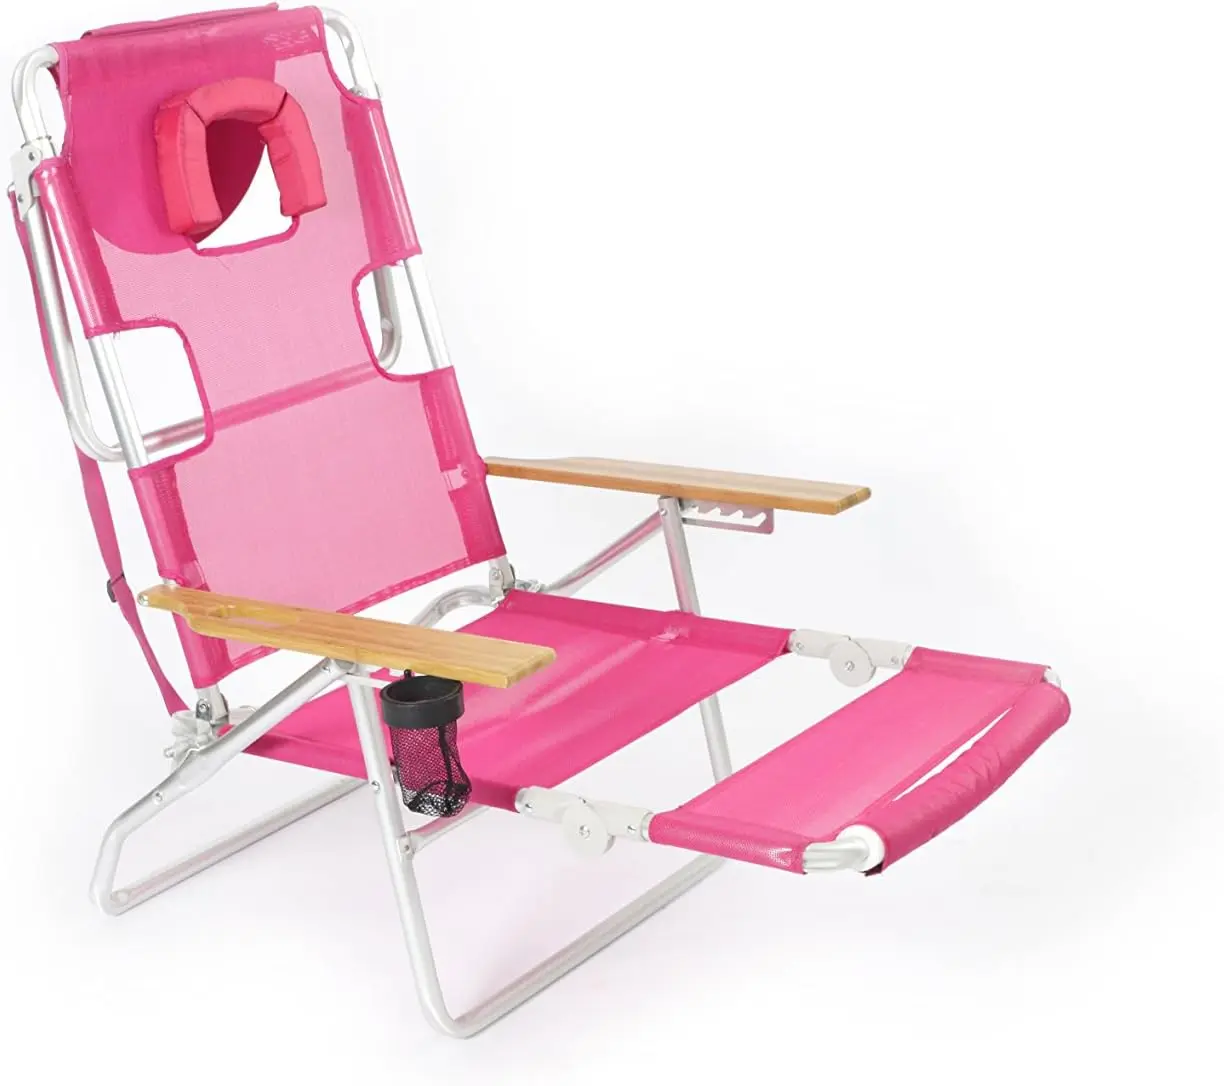 

Lightweight Lawn Beach Reclining Lounge Chair